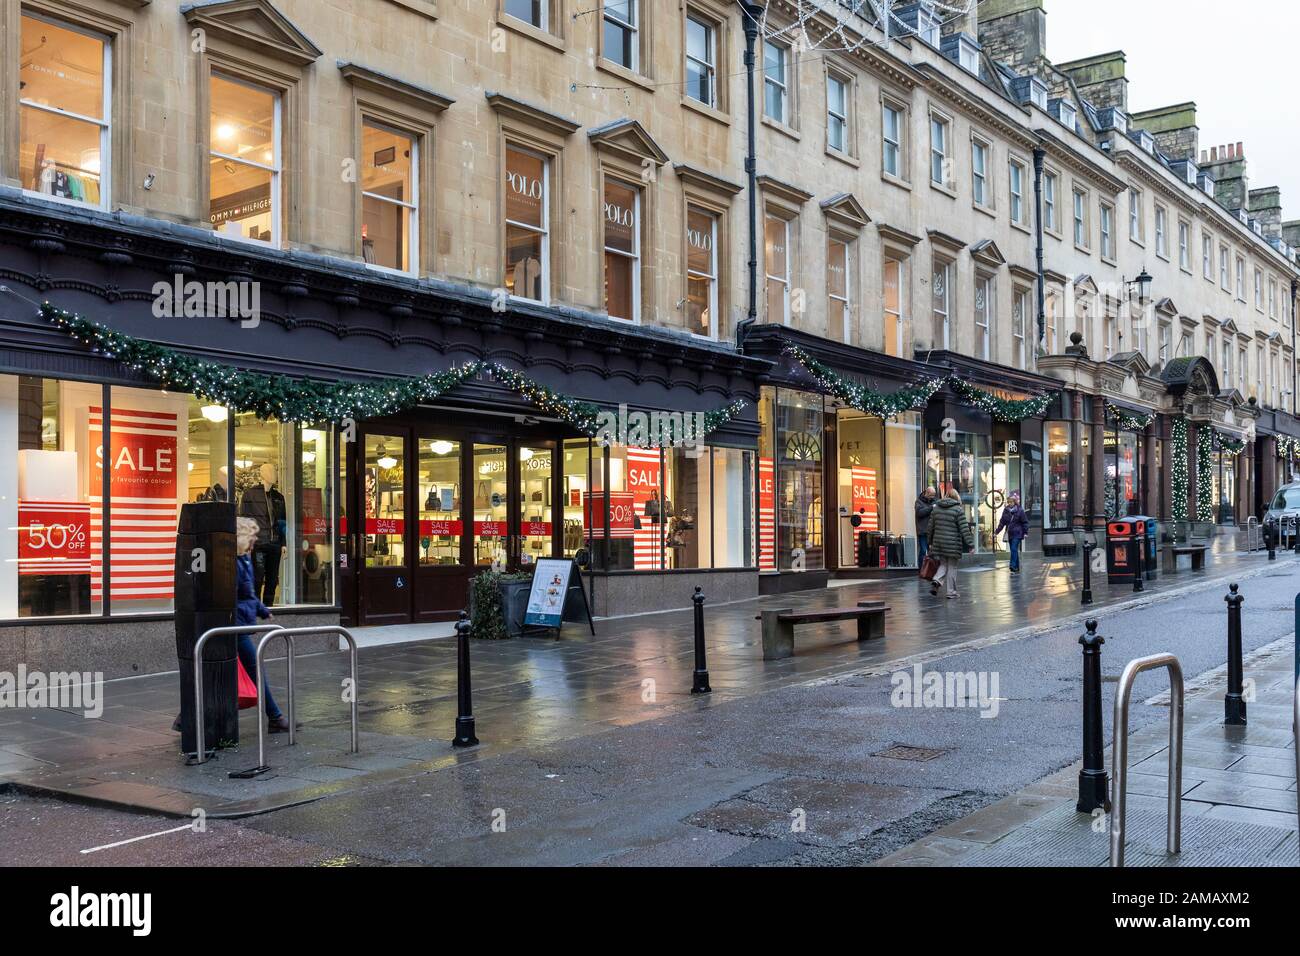 Vente de janvier au magasin House of Fraser Jollys, l'un des plus anciens grands magasins d'Europe, Milsom Street, Bath, Angleterre, Royaume-Uni Banque D'Images